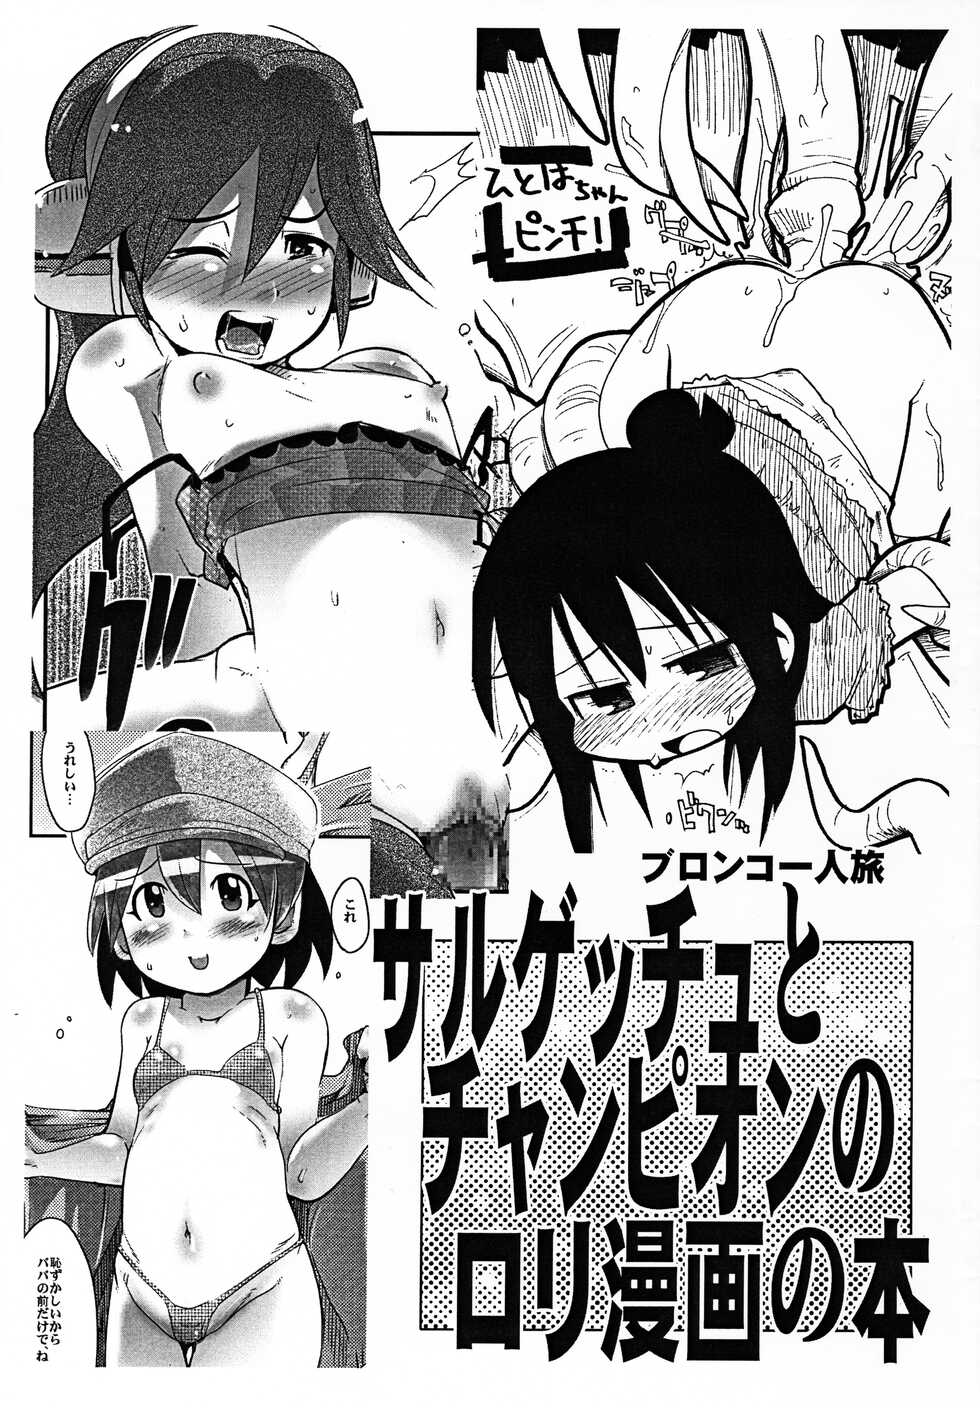 (Puniket 14) [Bronco Hitoritabi, Sumi kara Sumi made (Uchi-Uchi Keyaki, Gabyonuno)] Sarugetchu to Champion no Loli Manga no Hon (Various) - Page 1